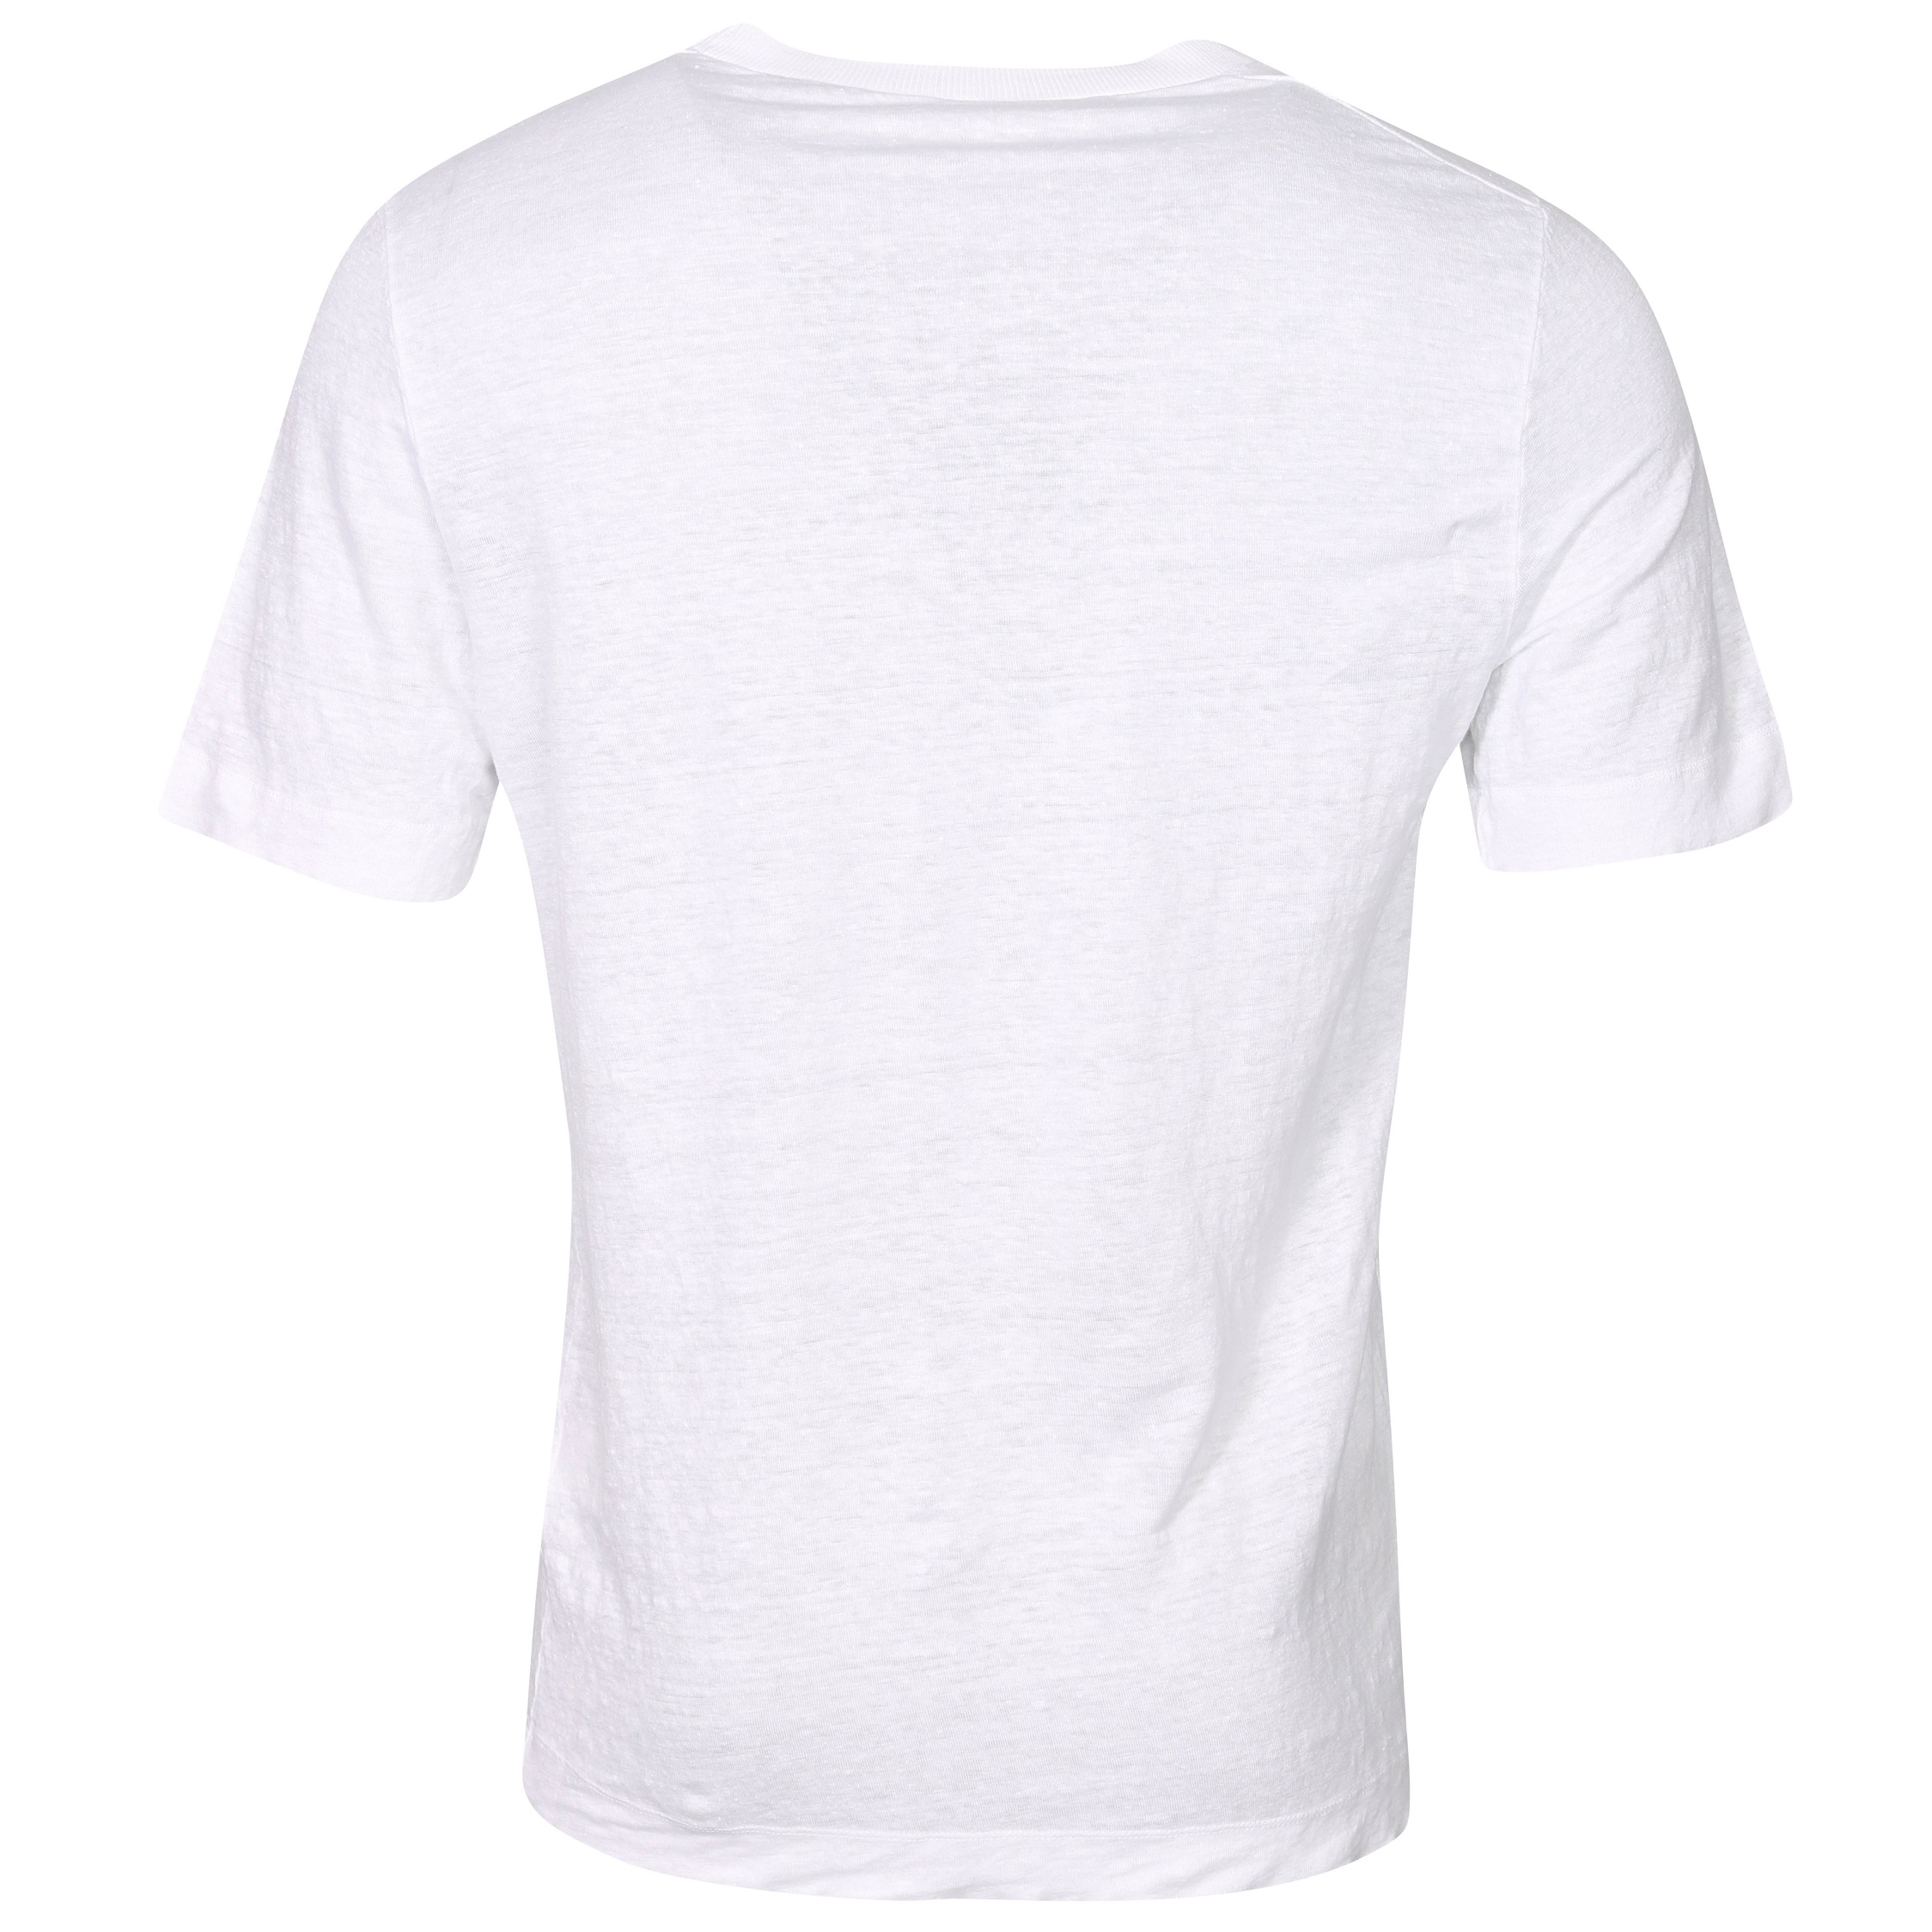 TRANSIT UOMO Hemp T-Shirt in White L